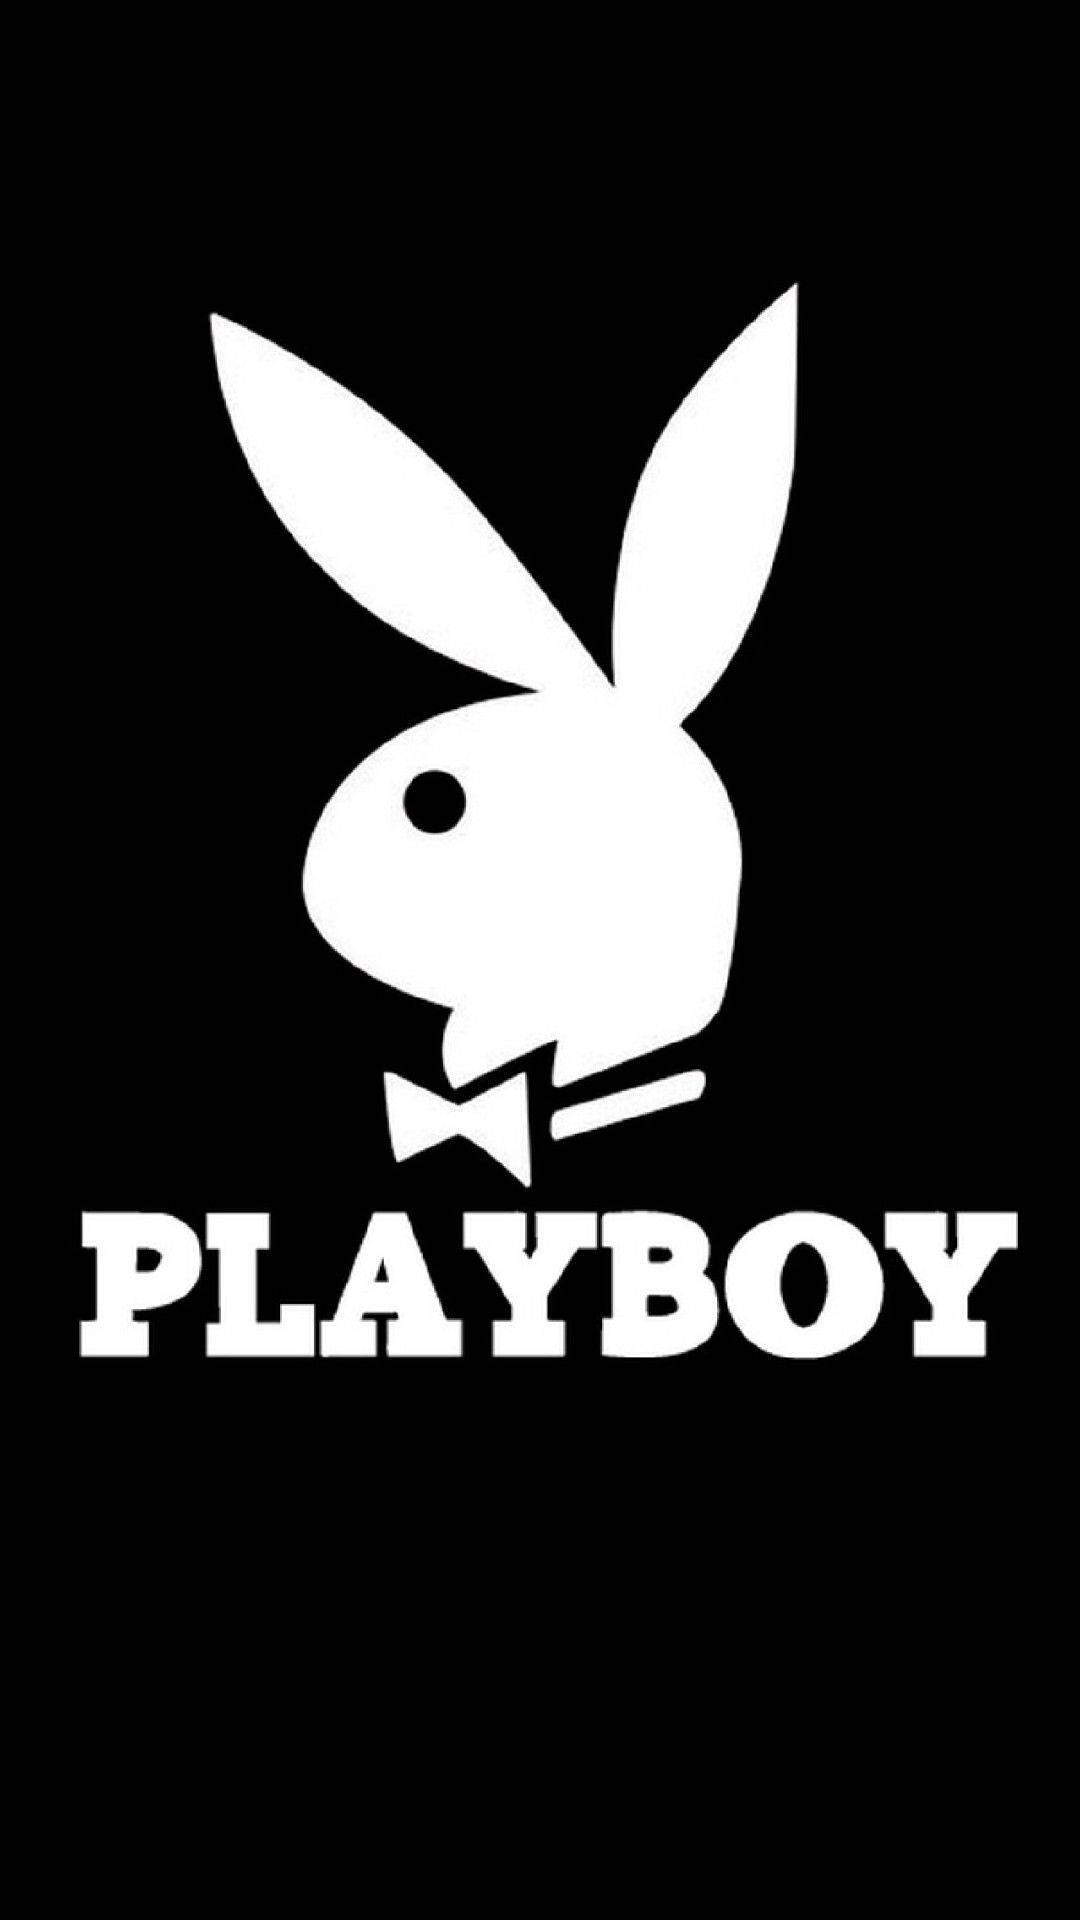 Playboy Aesthetic Black White Wallpaper